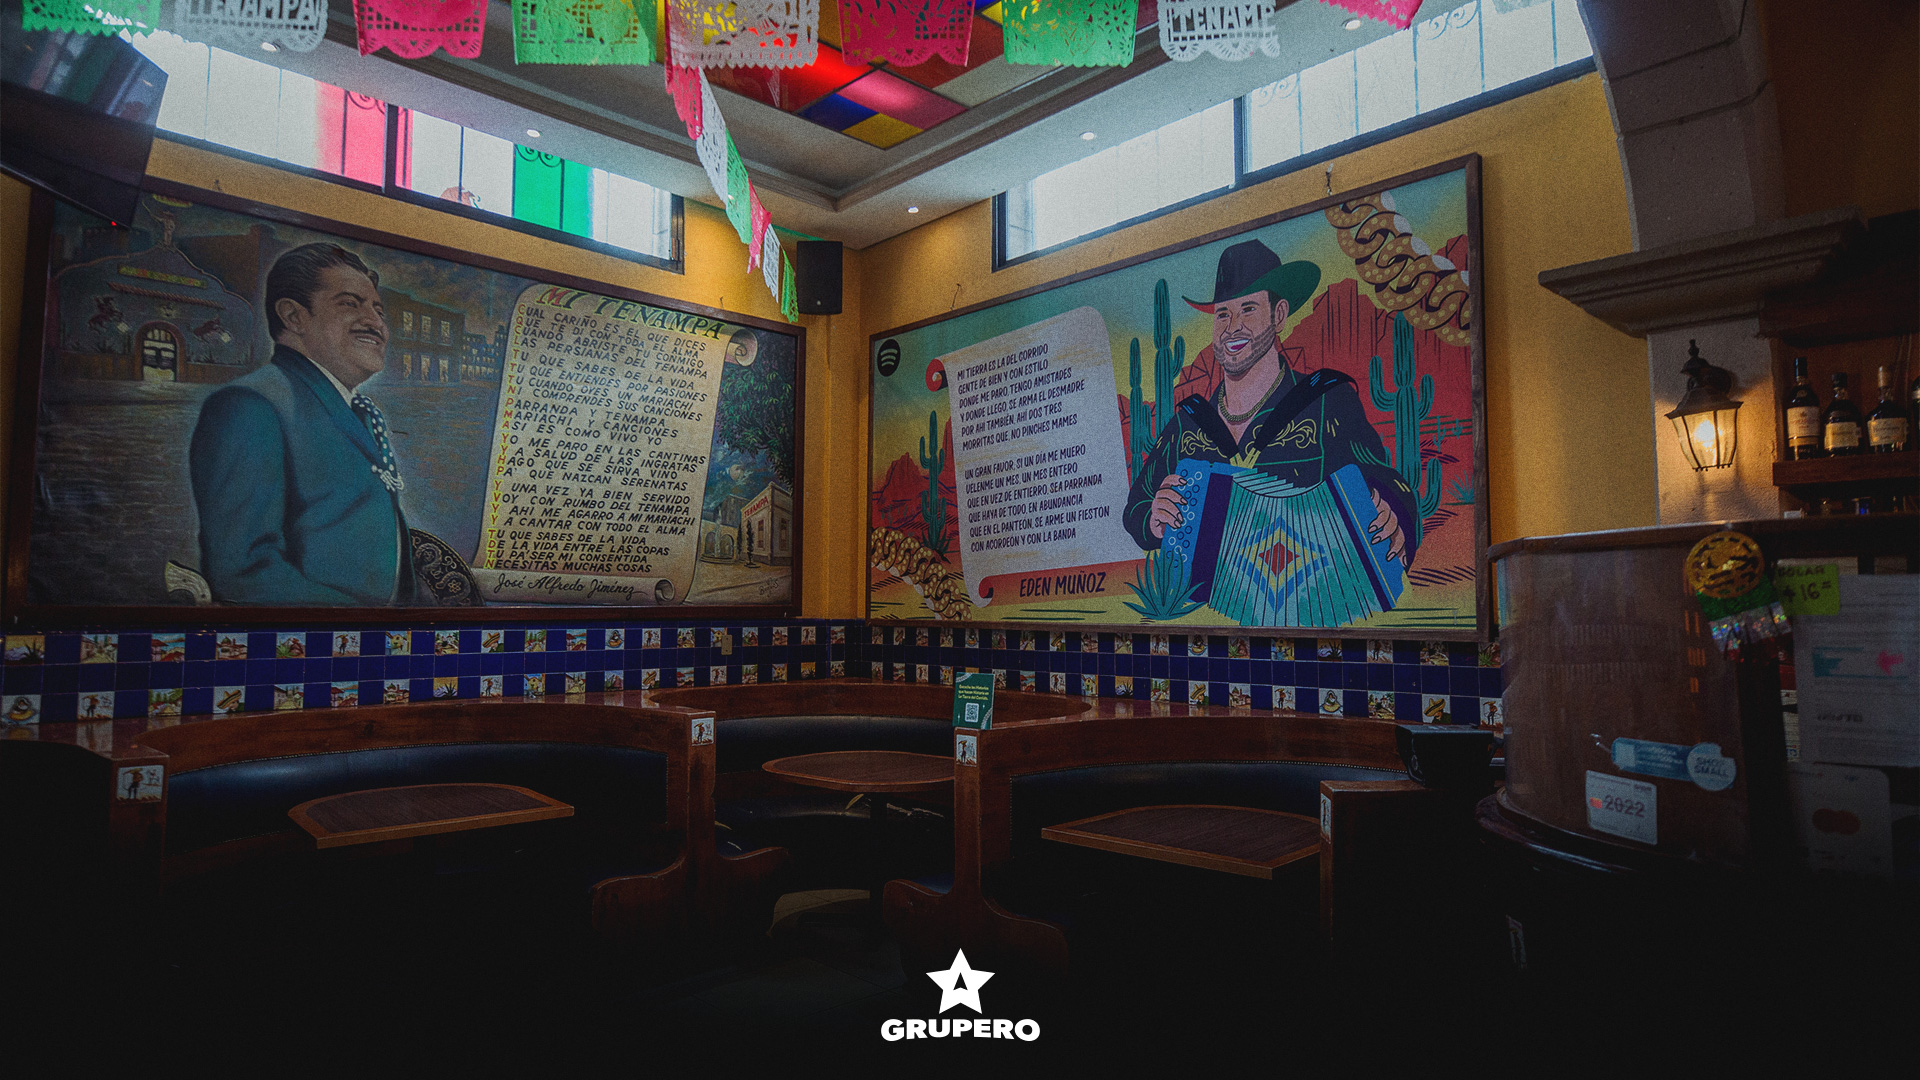 Spotify transforma los murales de Salón Tenampa en un homenaje a los héroes del Corrido